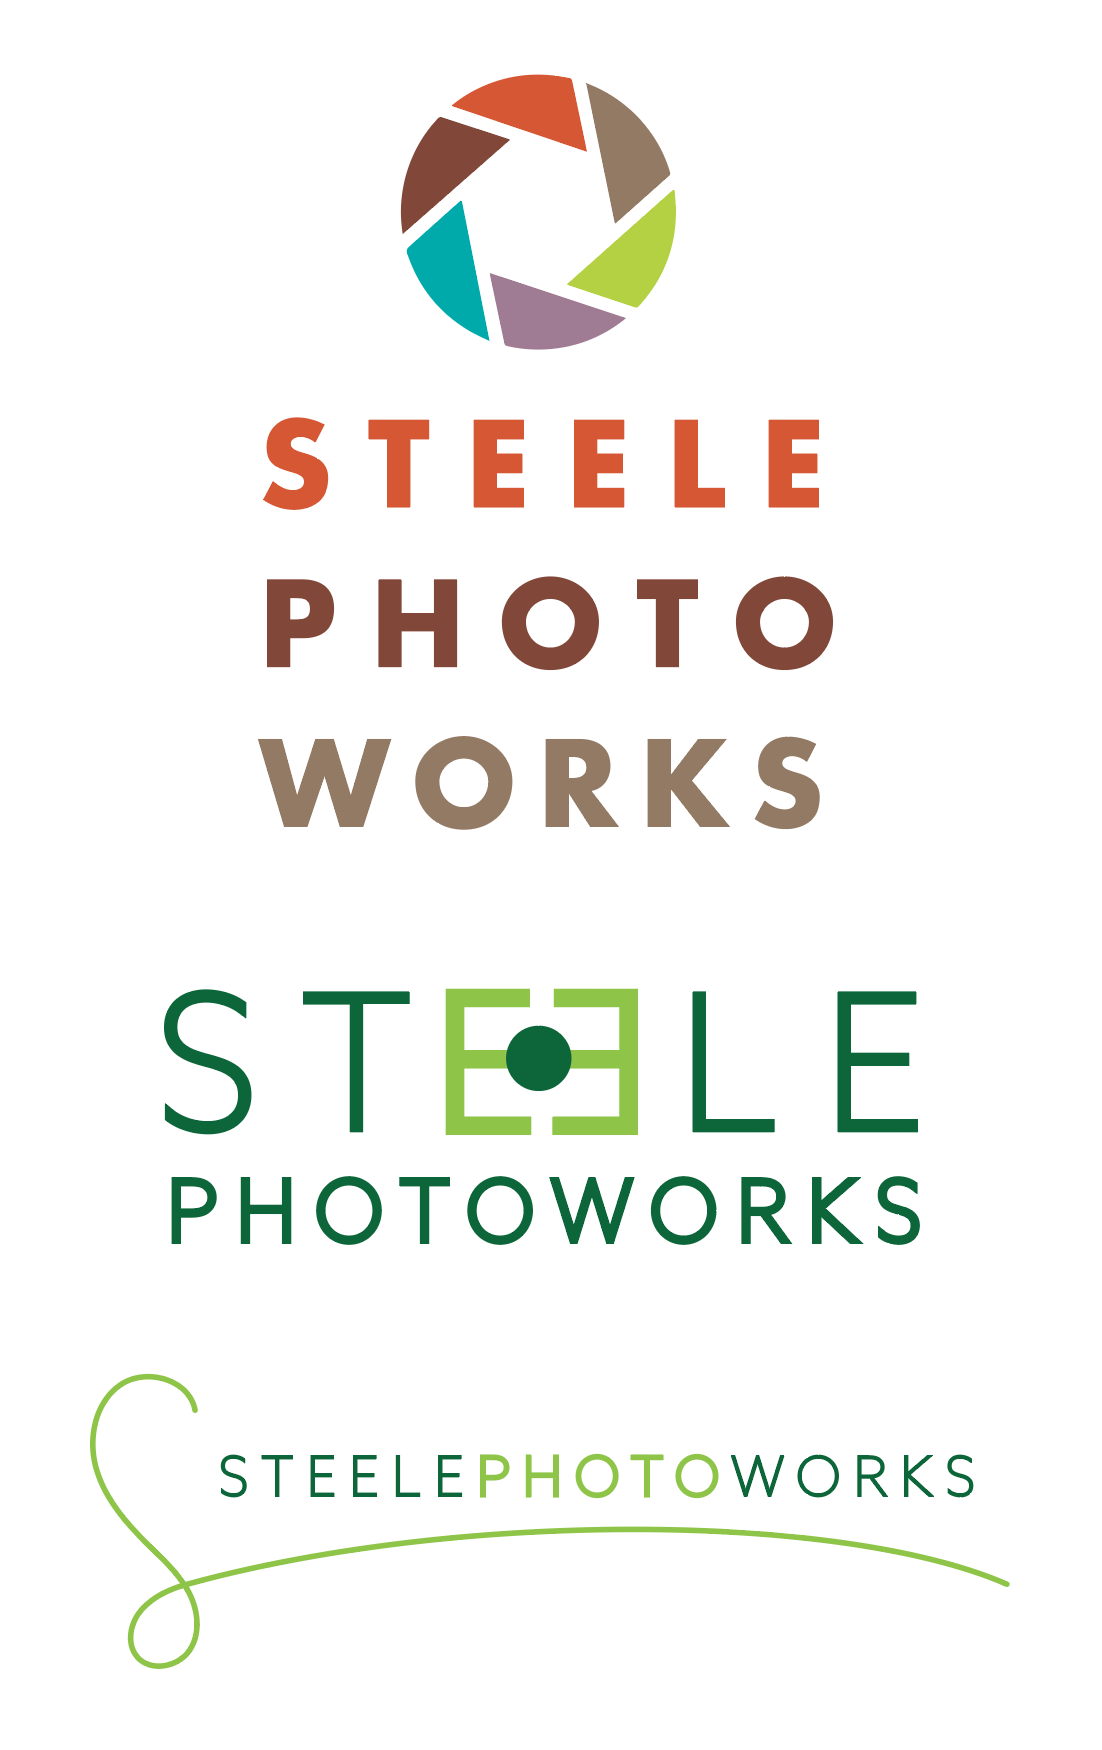 Steele Photoworks